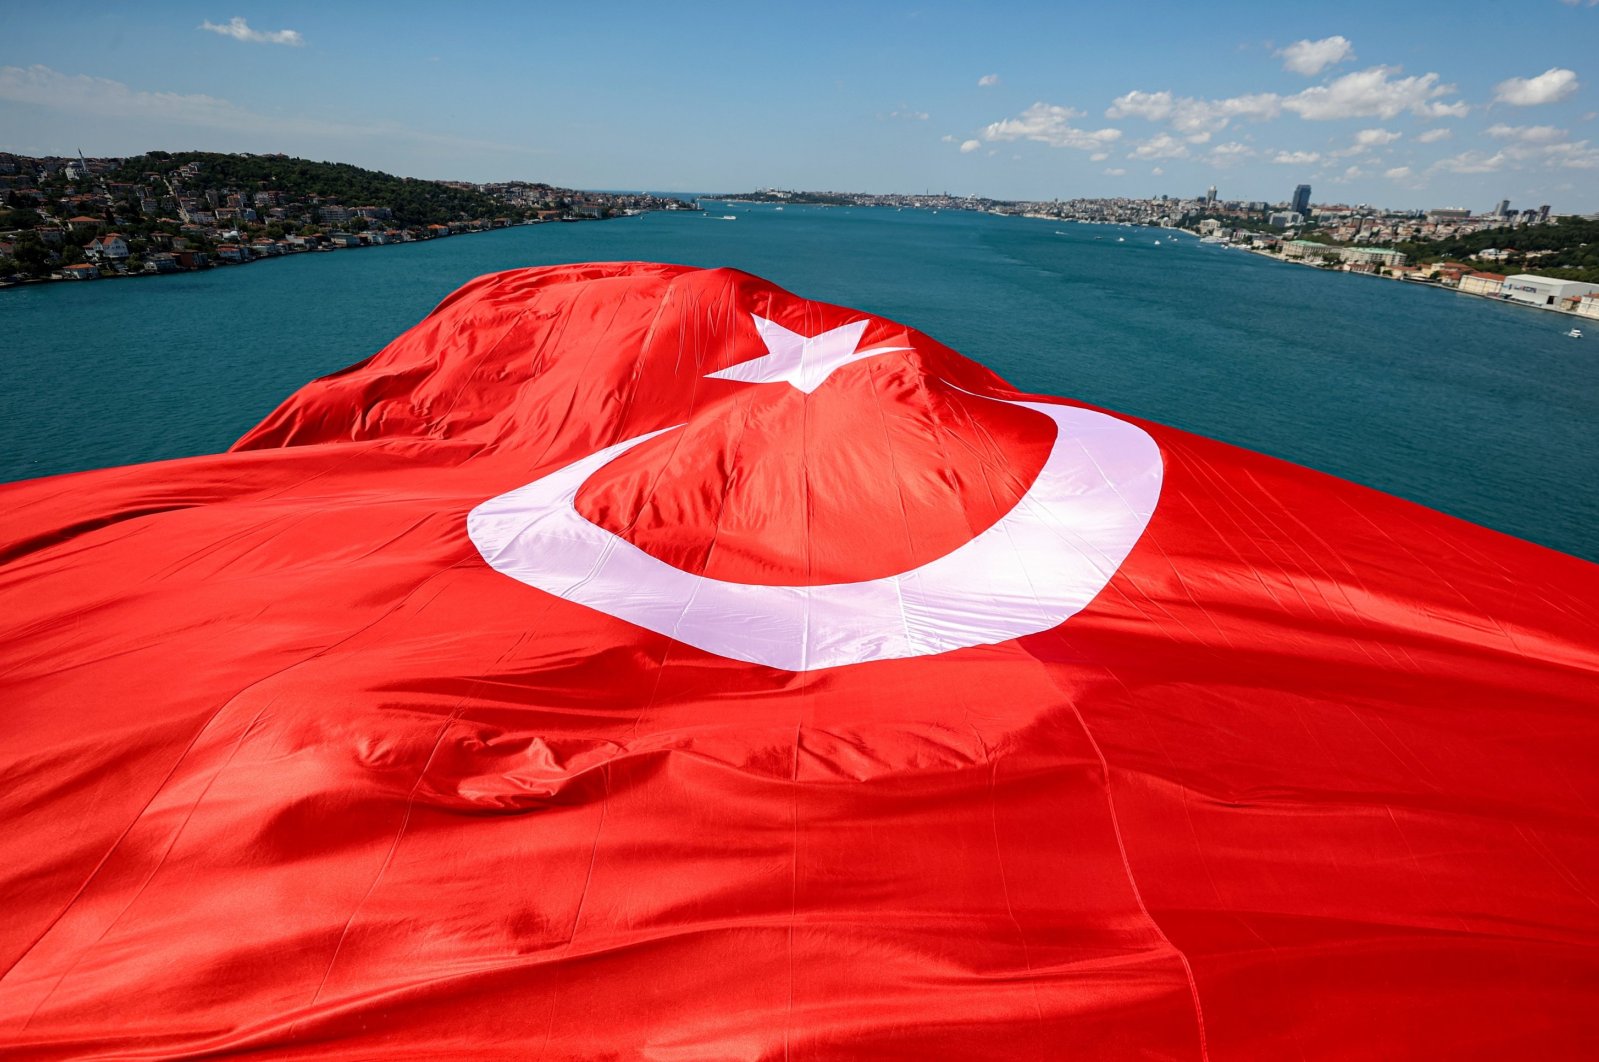 Türkiye berkomitmen untuk berdialog saat era baru semakin dekat